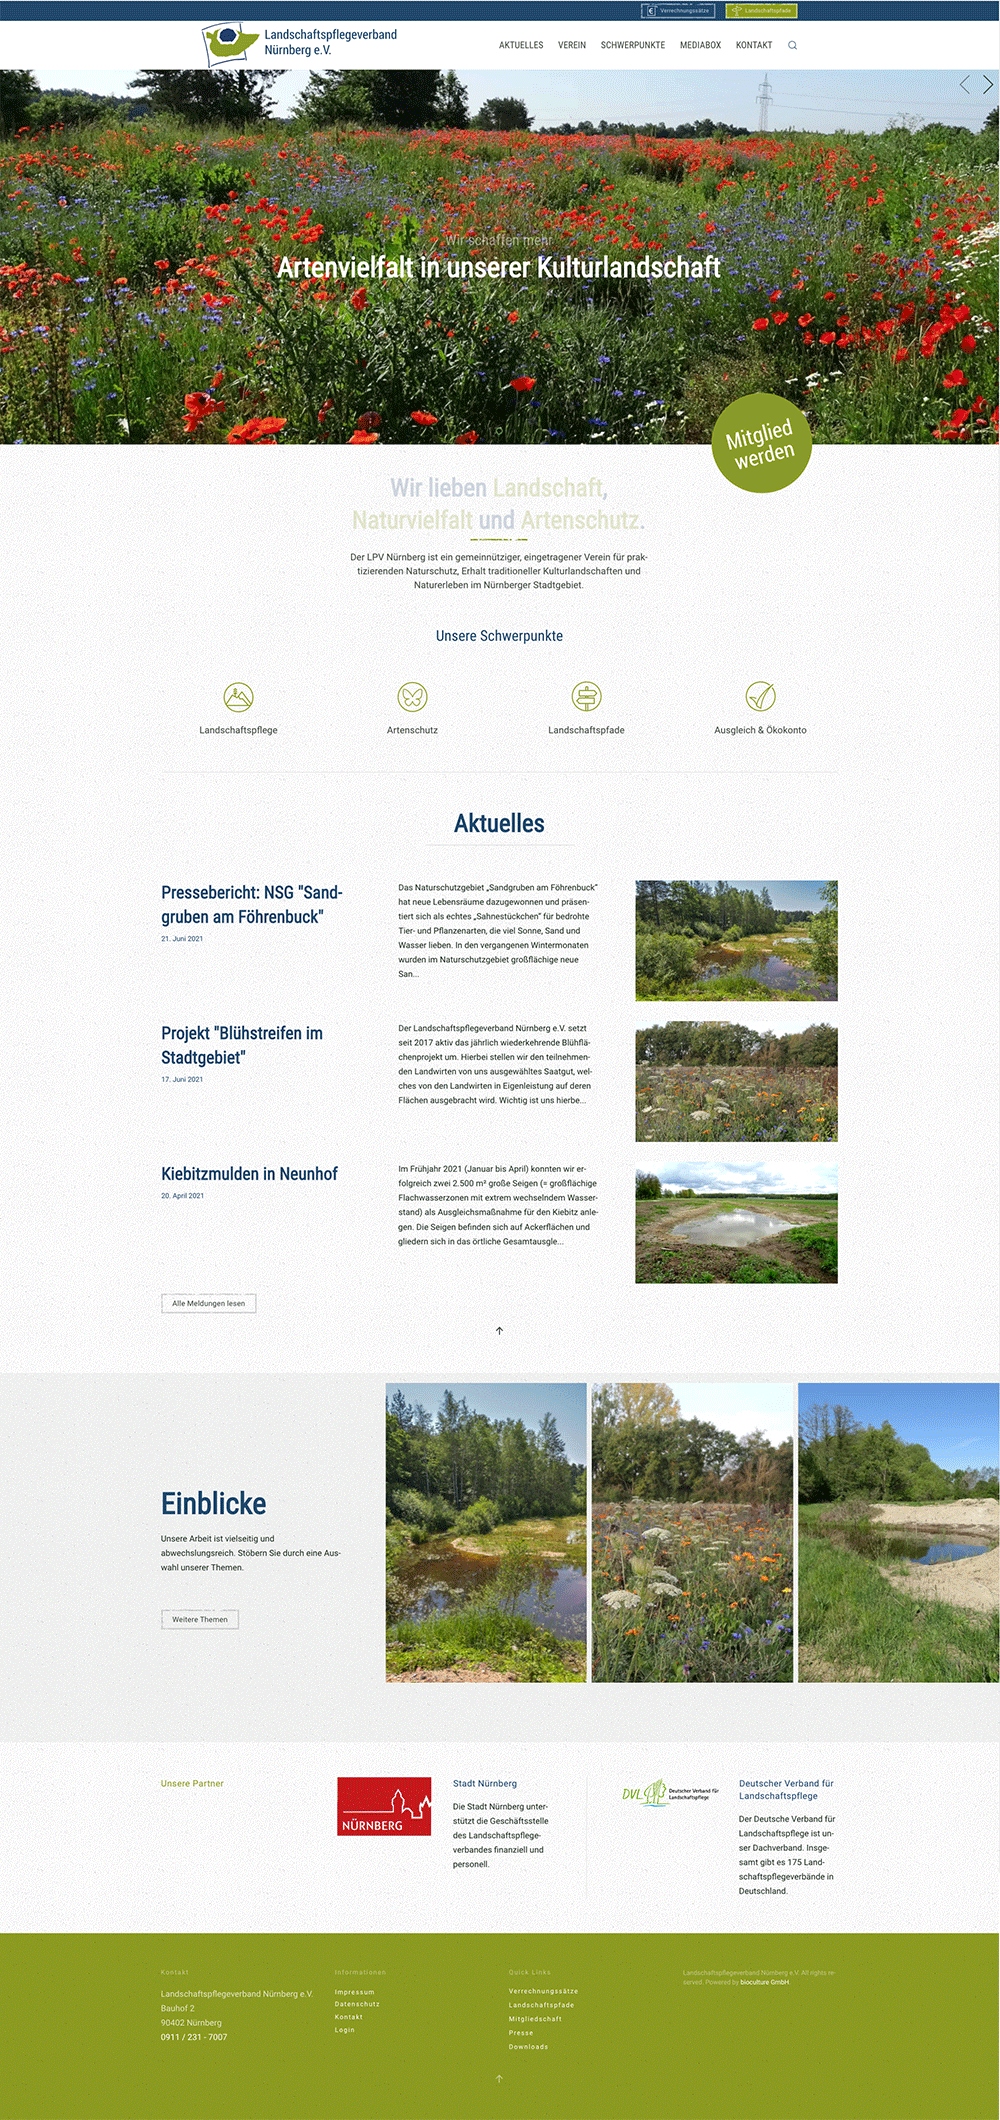 Neue Startseite für den Landschaftspflegeverein aus Nürnberg 